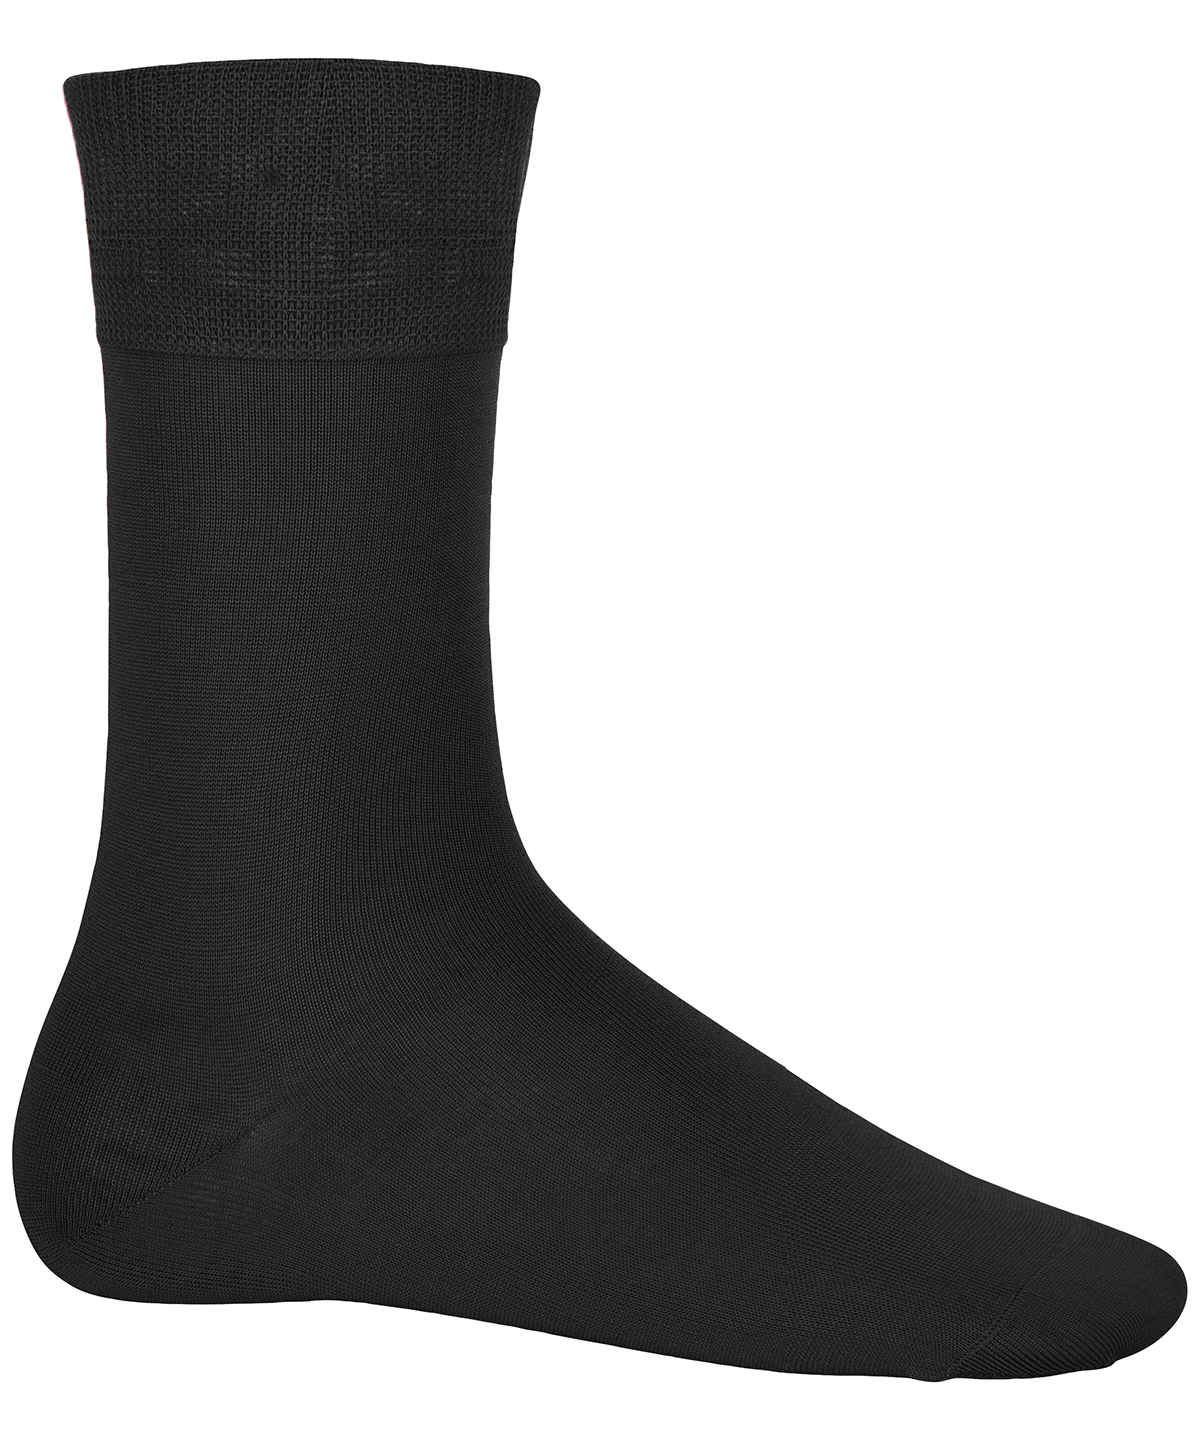 Cotton City Socks Black Size 79